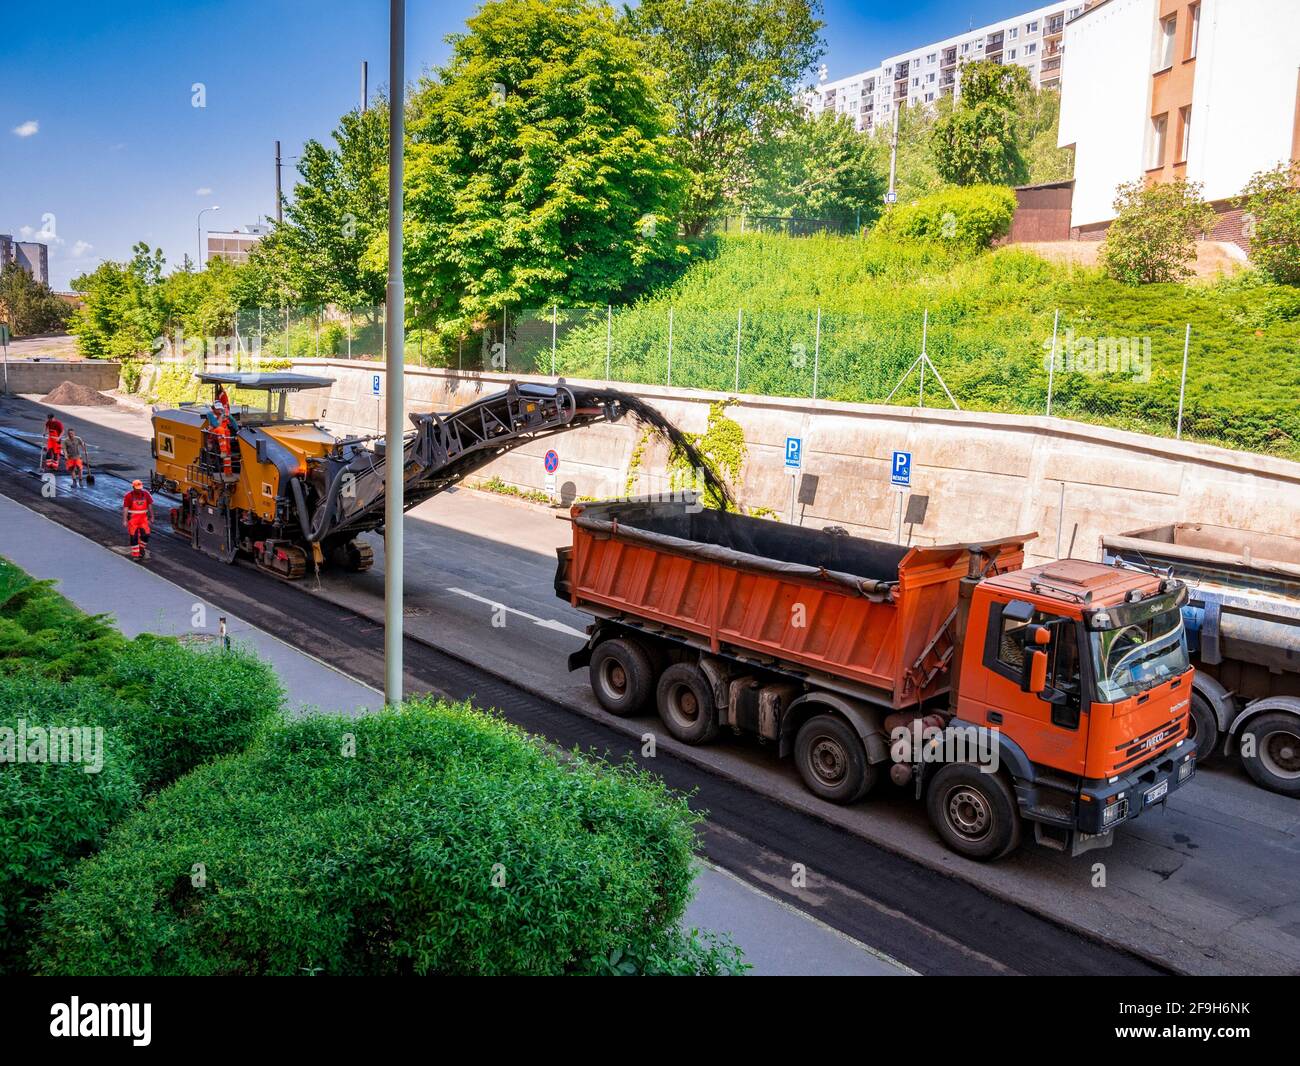 Usti nad Labem, République Tchèque - 5.22.2018: La fraiseuse enlève l'asphalte vieux de la route et le transporte vers un camion Banque D'Images